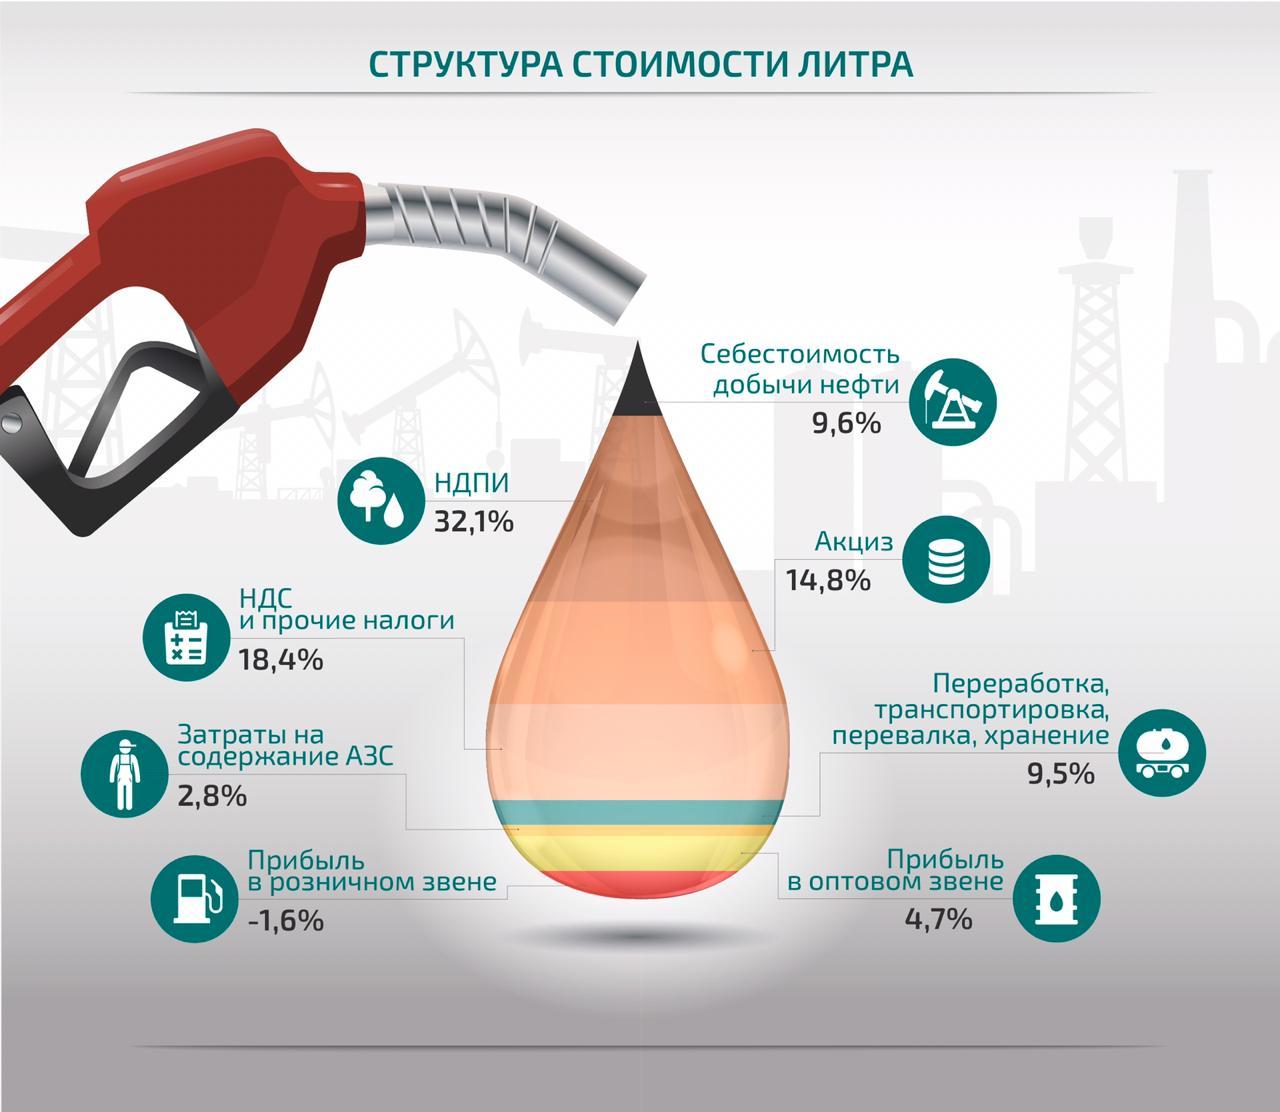 Моторное масло в россии 2023. Структура себестоимости бензина. Бензин инфографика. Структура стоимости бензина. Состав цены на бензин.